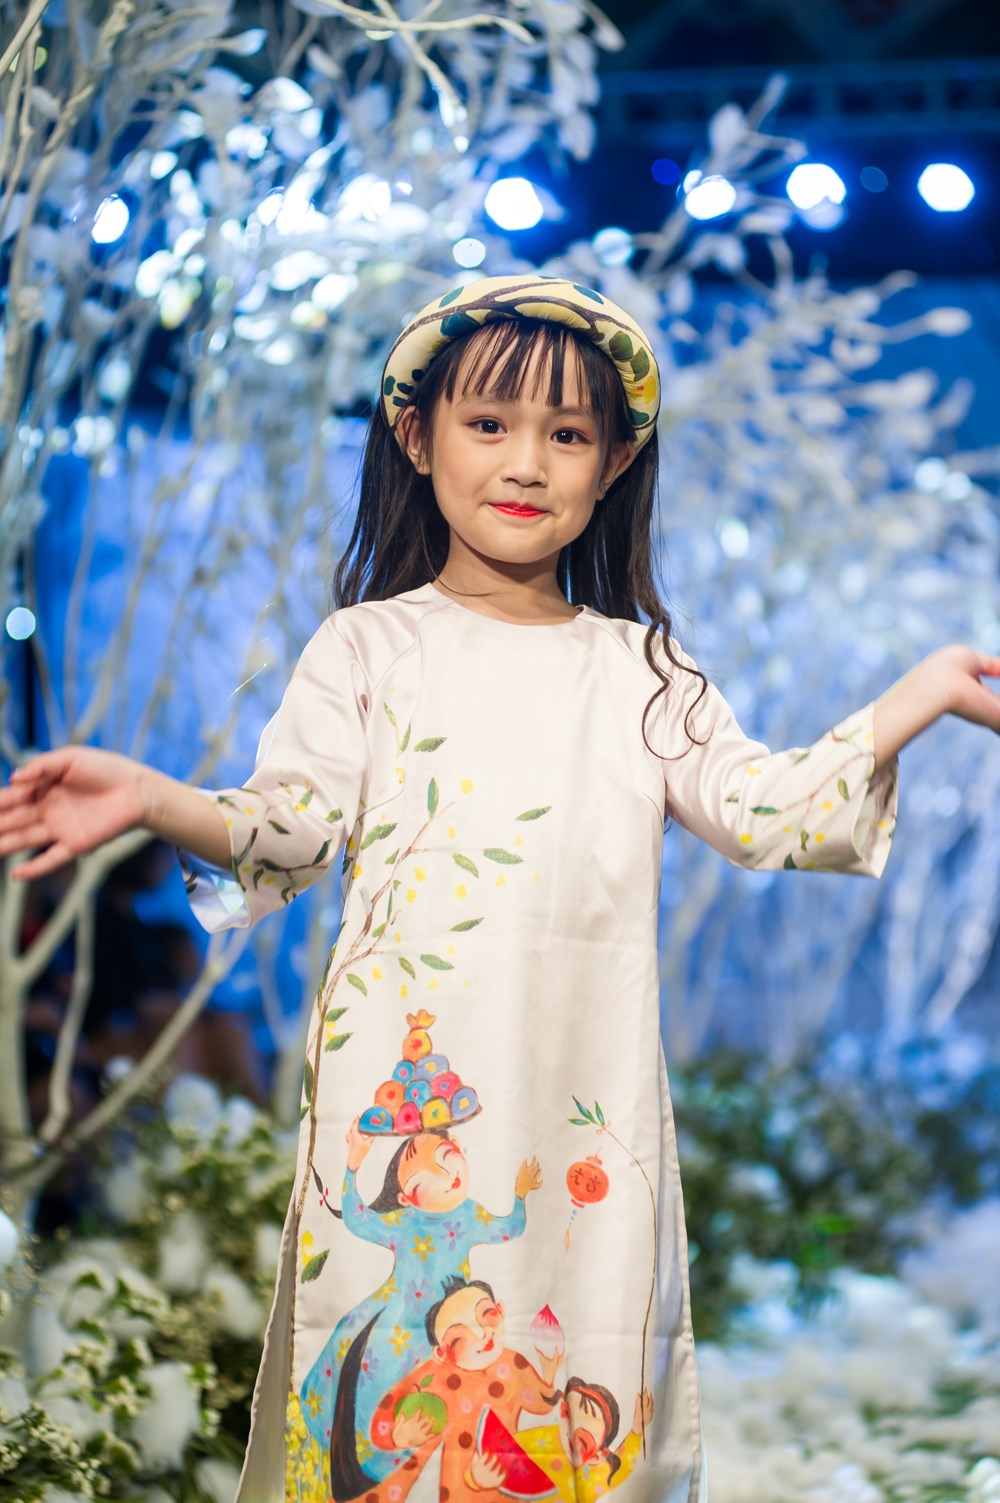 Tuần lễ thời trang trẻ em Việt Nam trên khu vườn tuyết trắng - ảnh 4